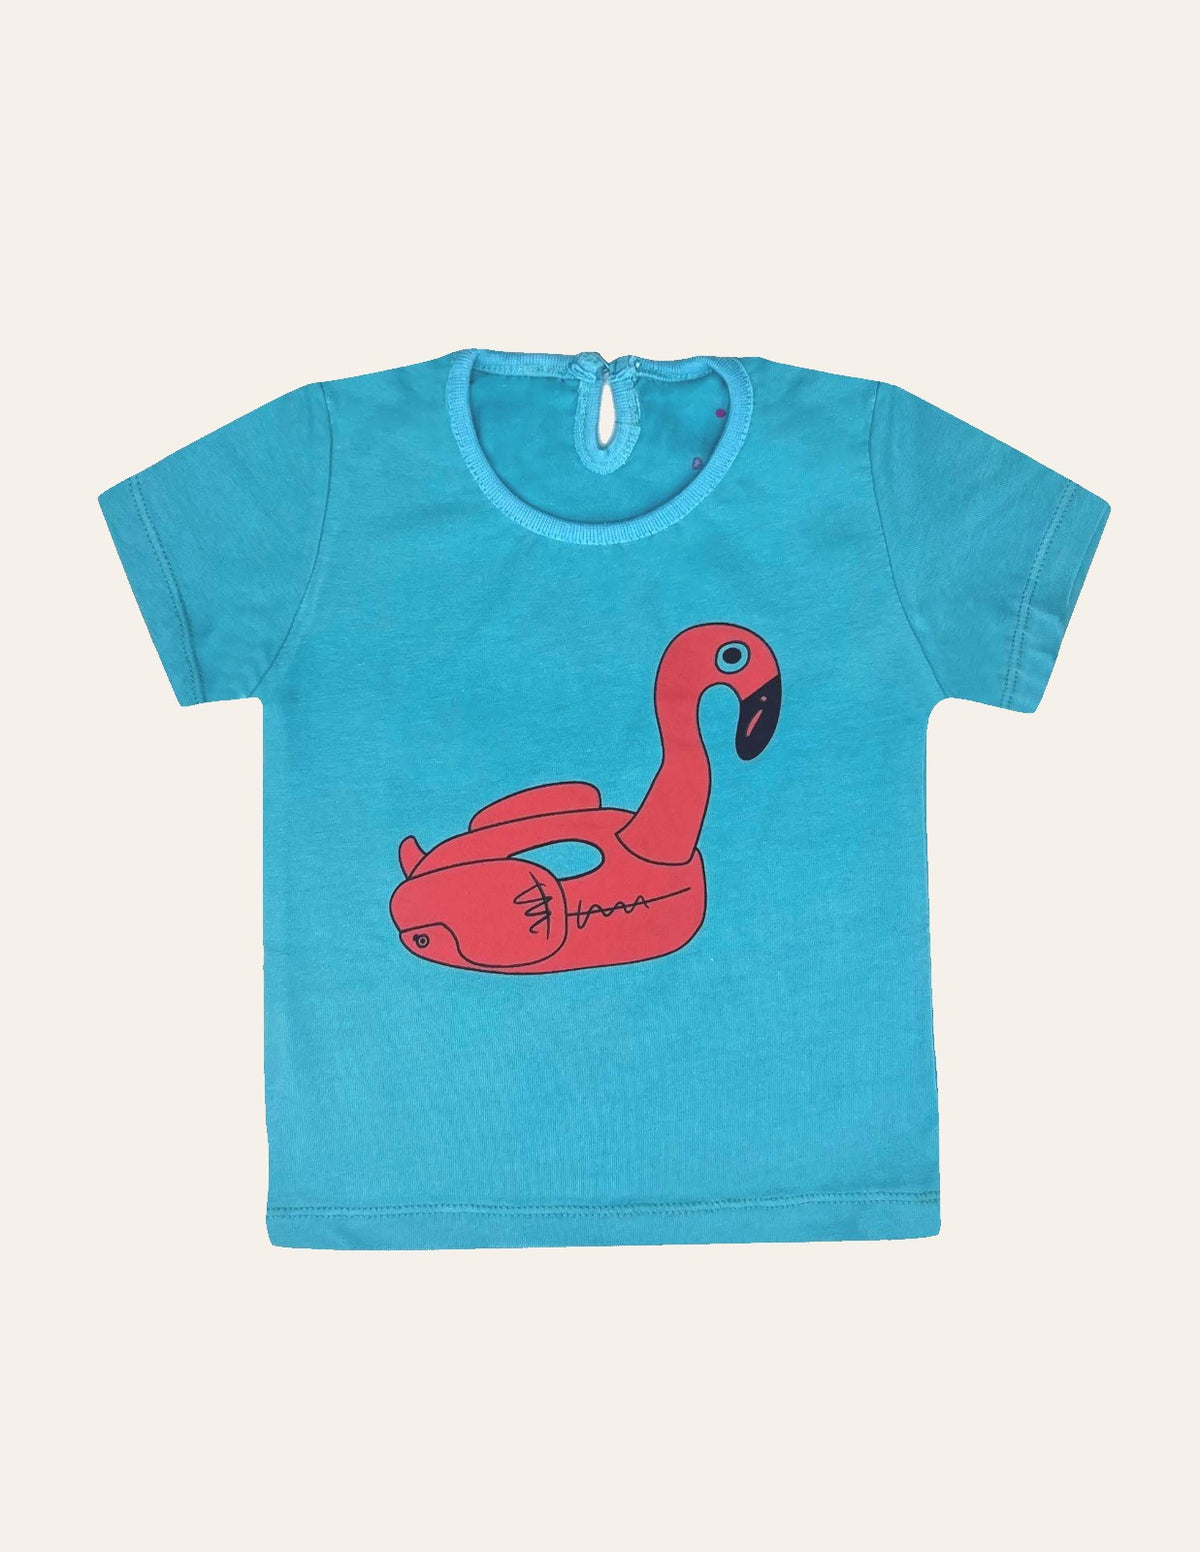 Girls Flamingo T-Shirt